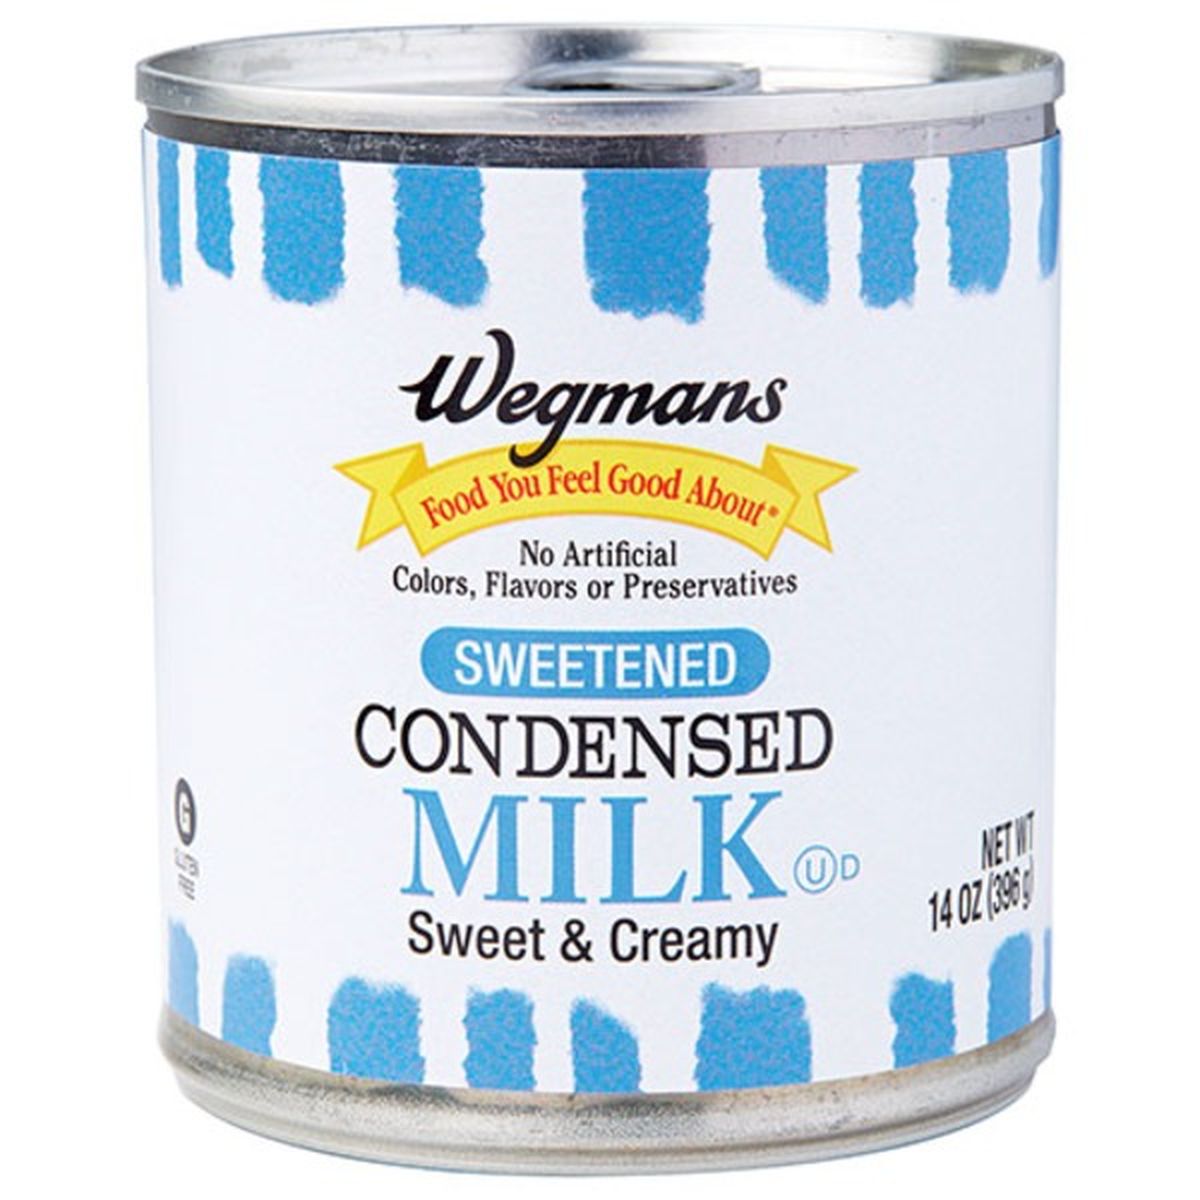 Calories in Wegmans Sweetened Condensed Milk